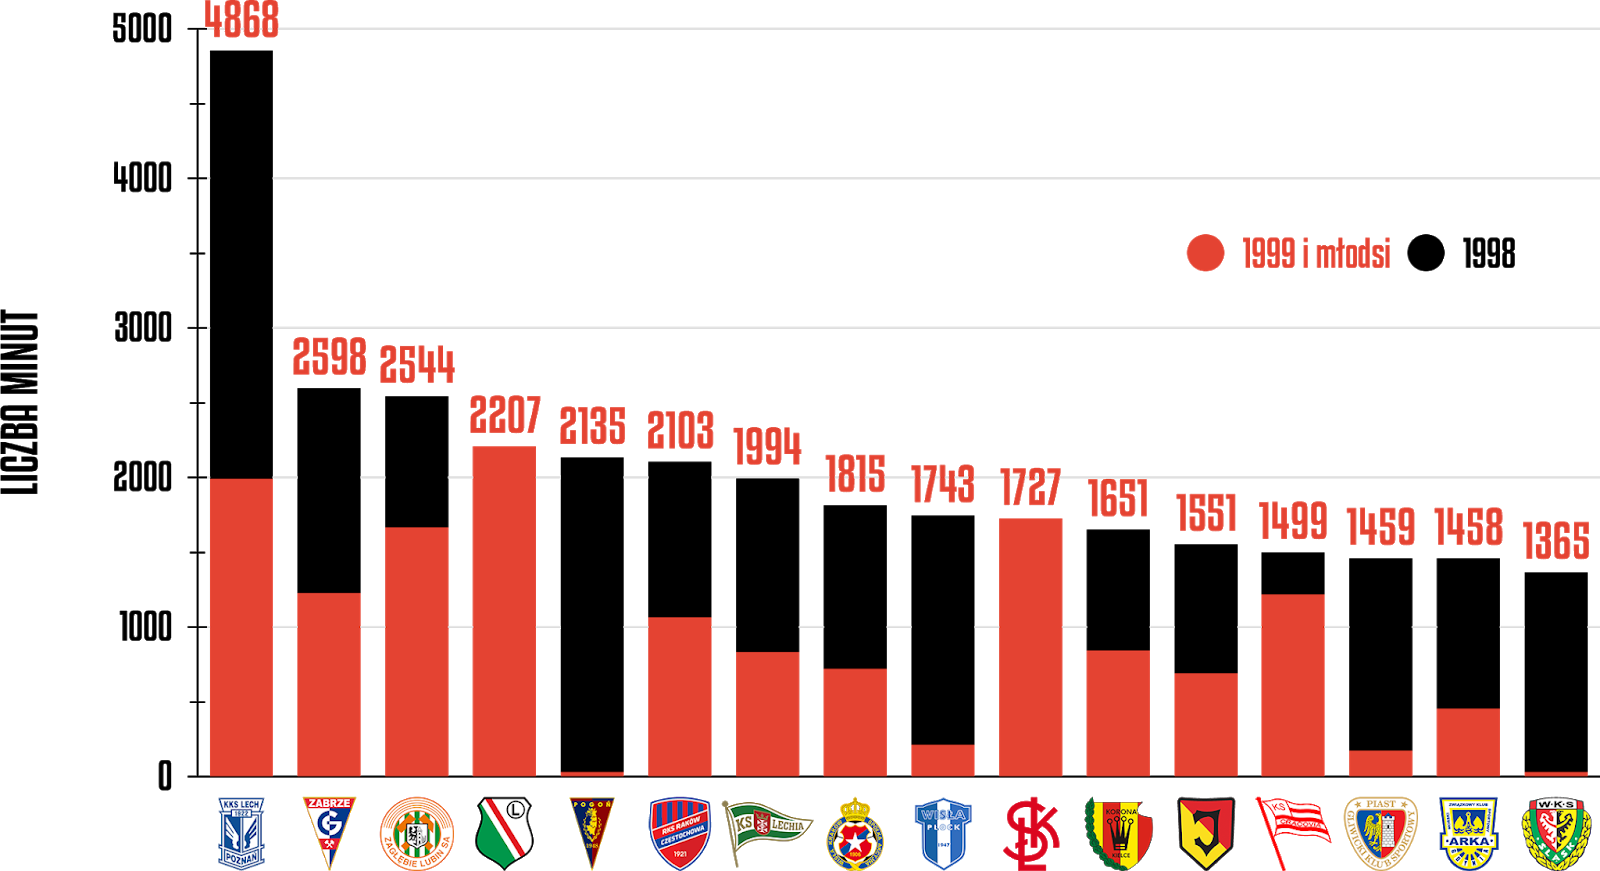 Klasyfikacja klubów pod względem rozegranych minut przez młodzieżowców po 15 kolejkach PKO Ekstraklasy<br><br>Źródło: Opracowanie własne na podstawie ekstrastats.pl<br><br>graf. Bartosz Urban